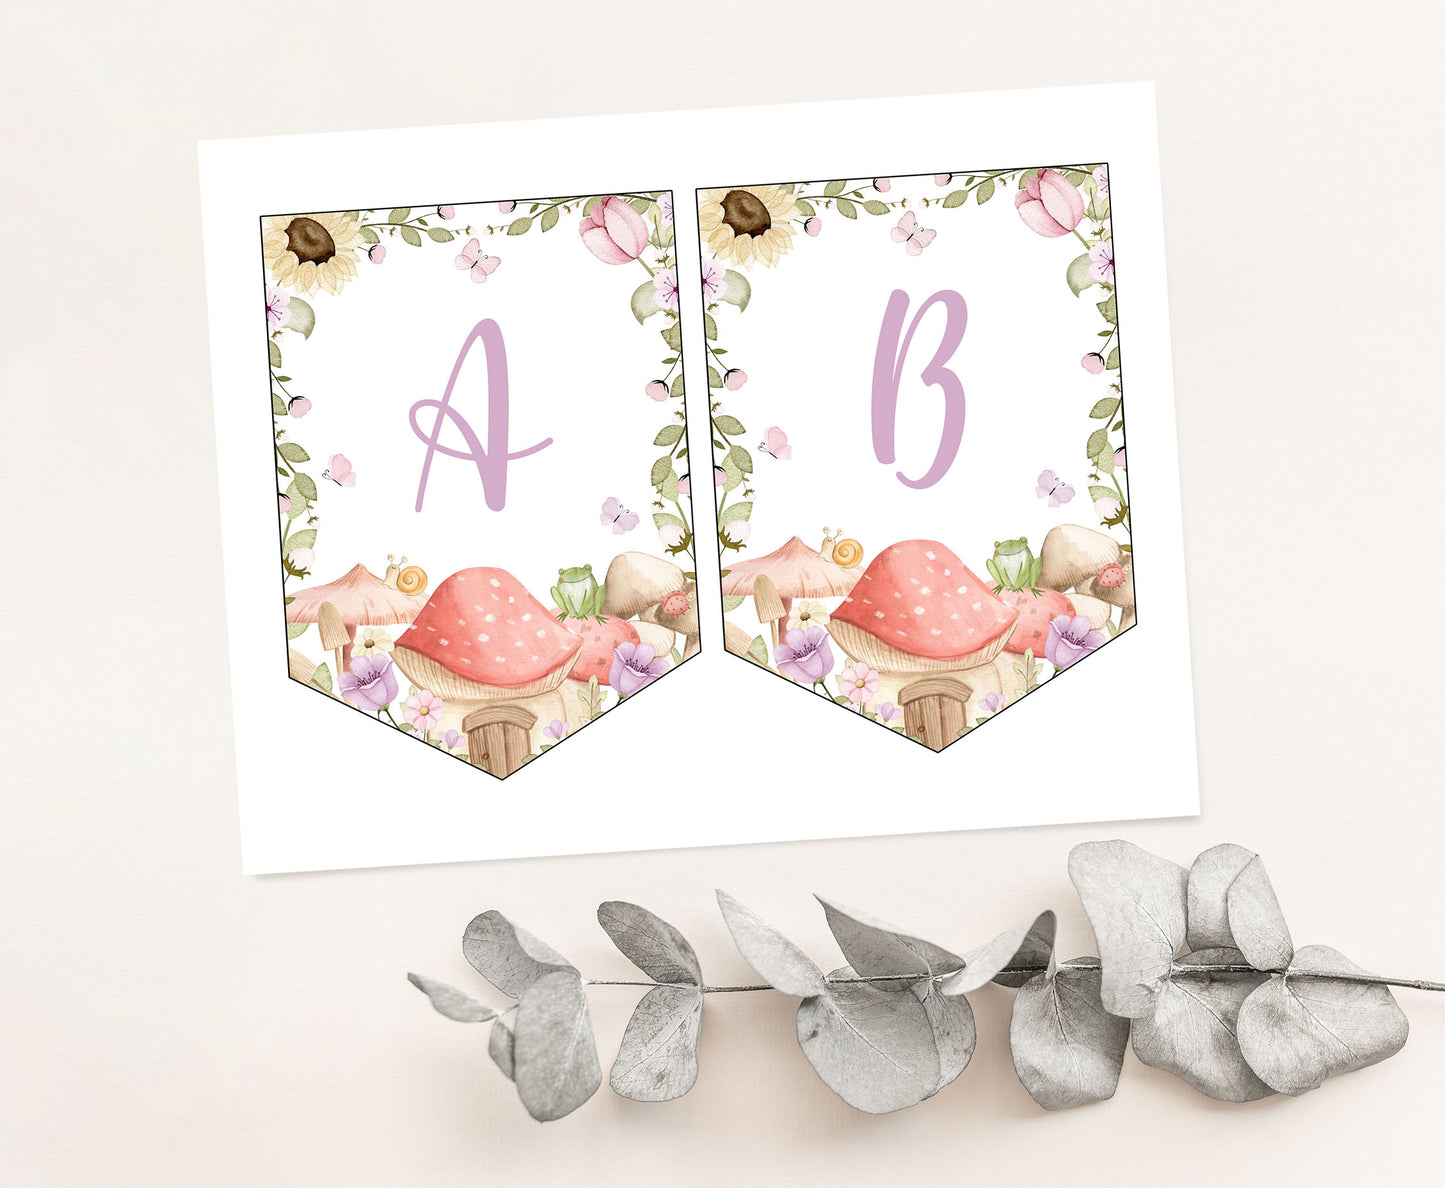 Editable Fairy Banner | Garden Fairy Party Decorations - 10A